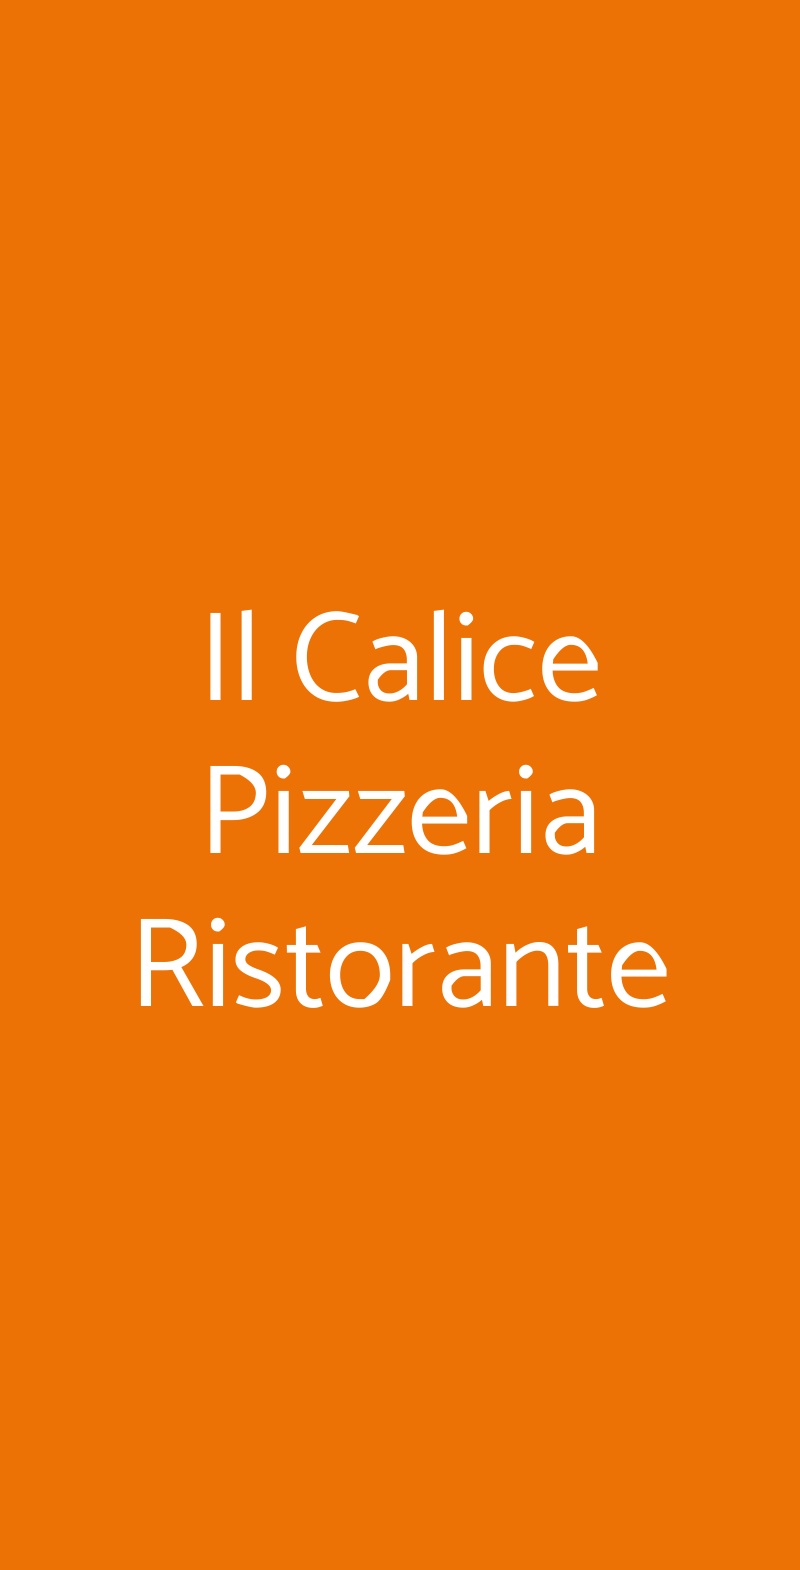 Il Calice Pizzeria Ristorante Verona menù 1 pagina